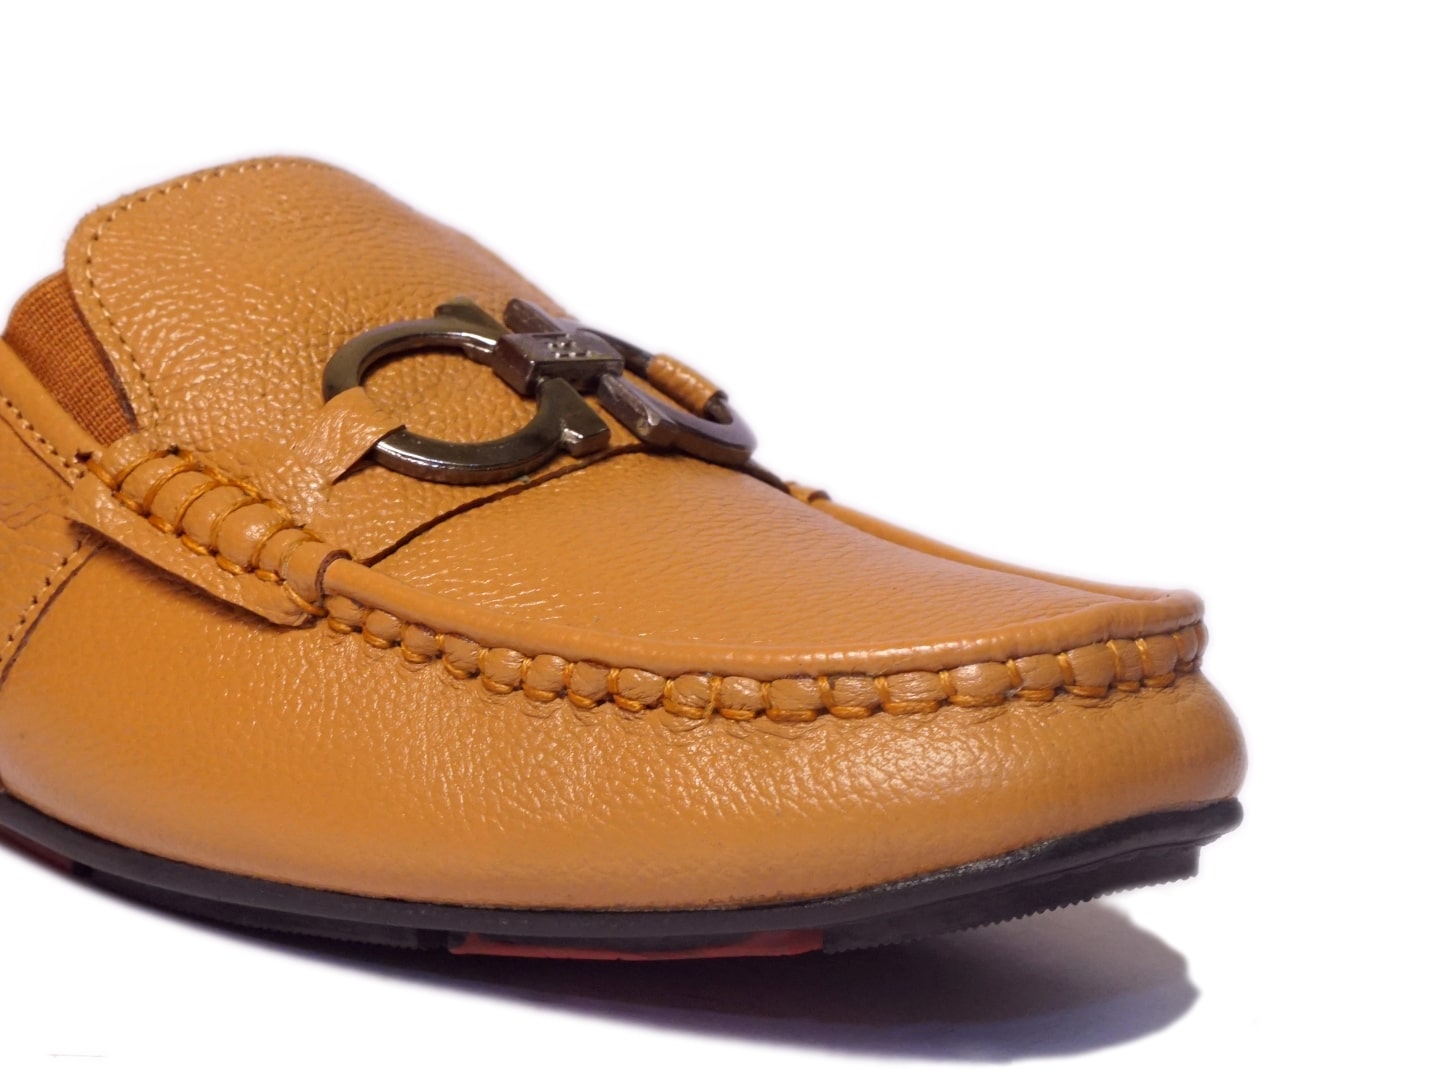 Men Footwear, Tan Mules